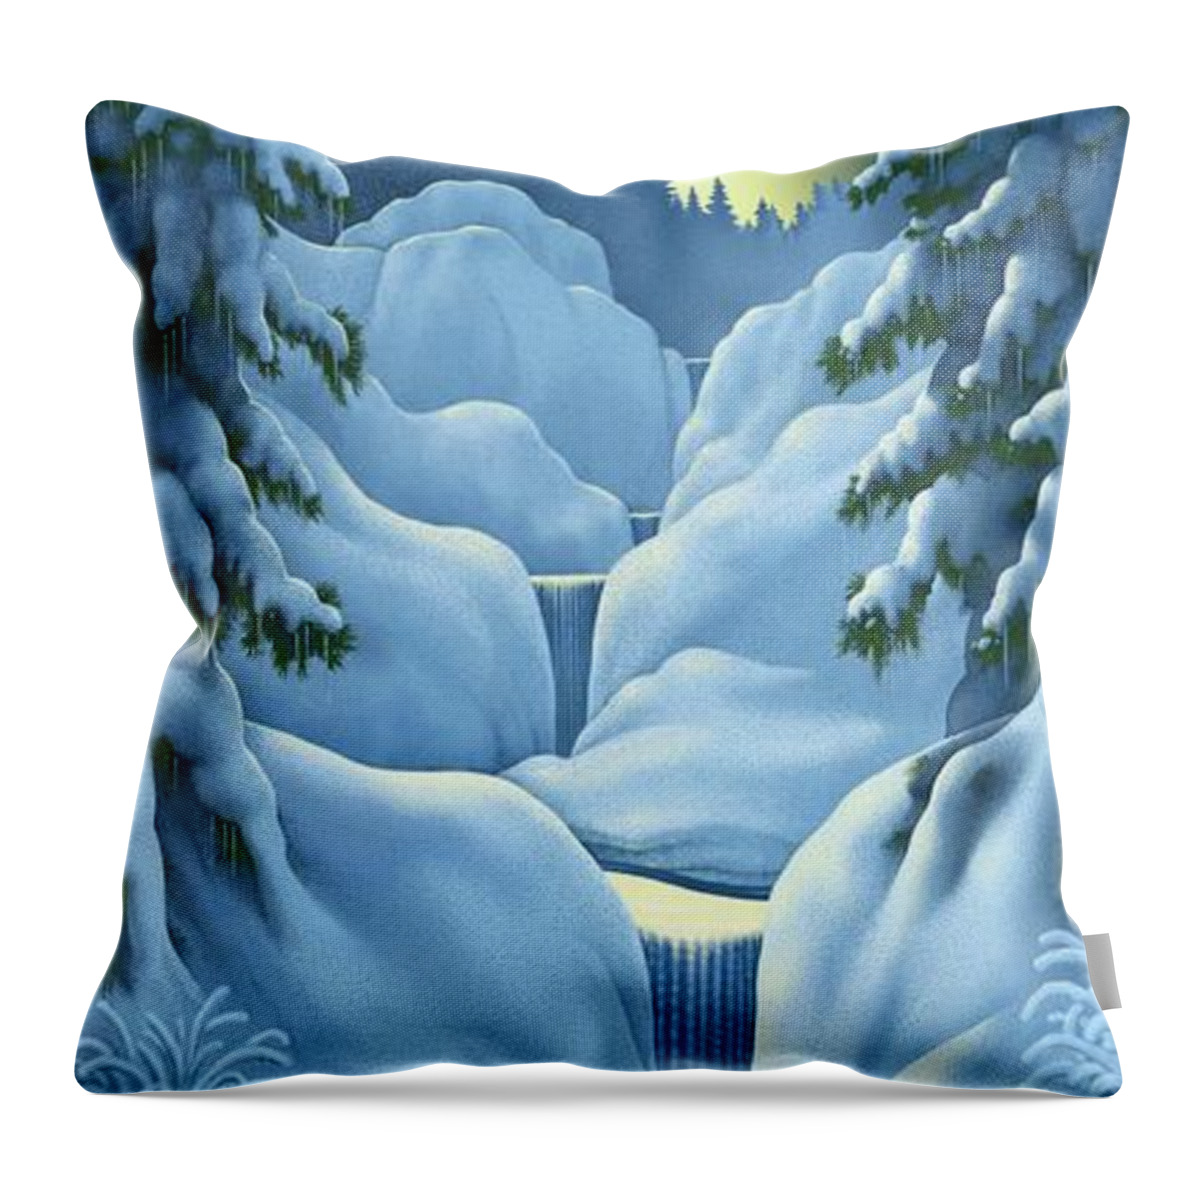 Landscape Throw Pillow featuring the digital art Midnight Sun by Scott Ross